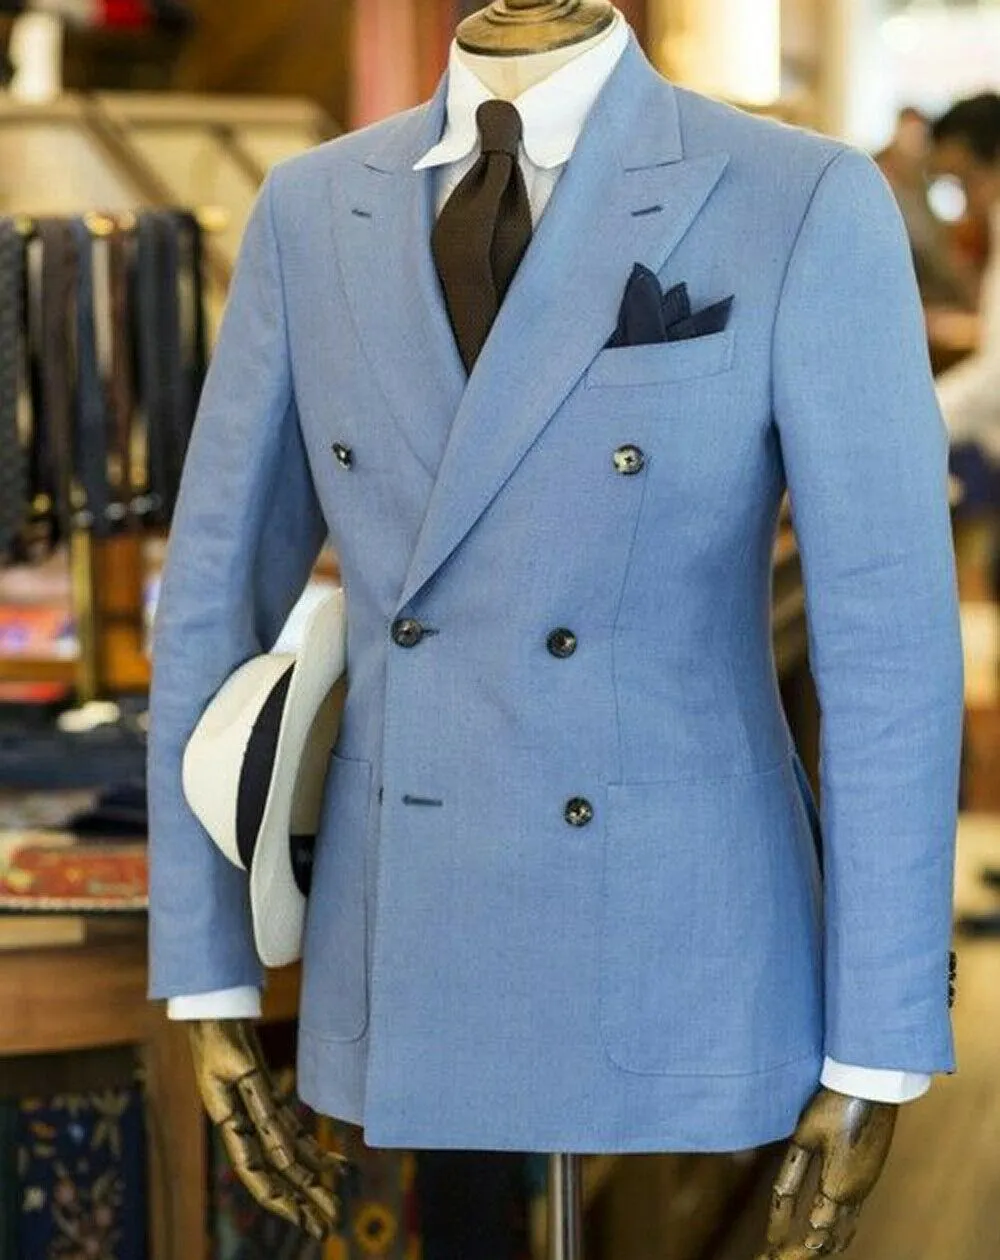 Sıcak Satış çift Breasted Açık Mavi Düğün Erkekler Tepe Yaka İki adet İş Damat smokin (Ceket + Pantolon + Kravat) W1226 Takımları